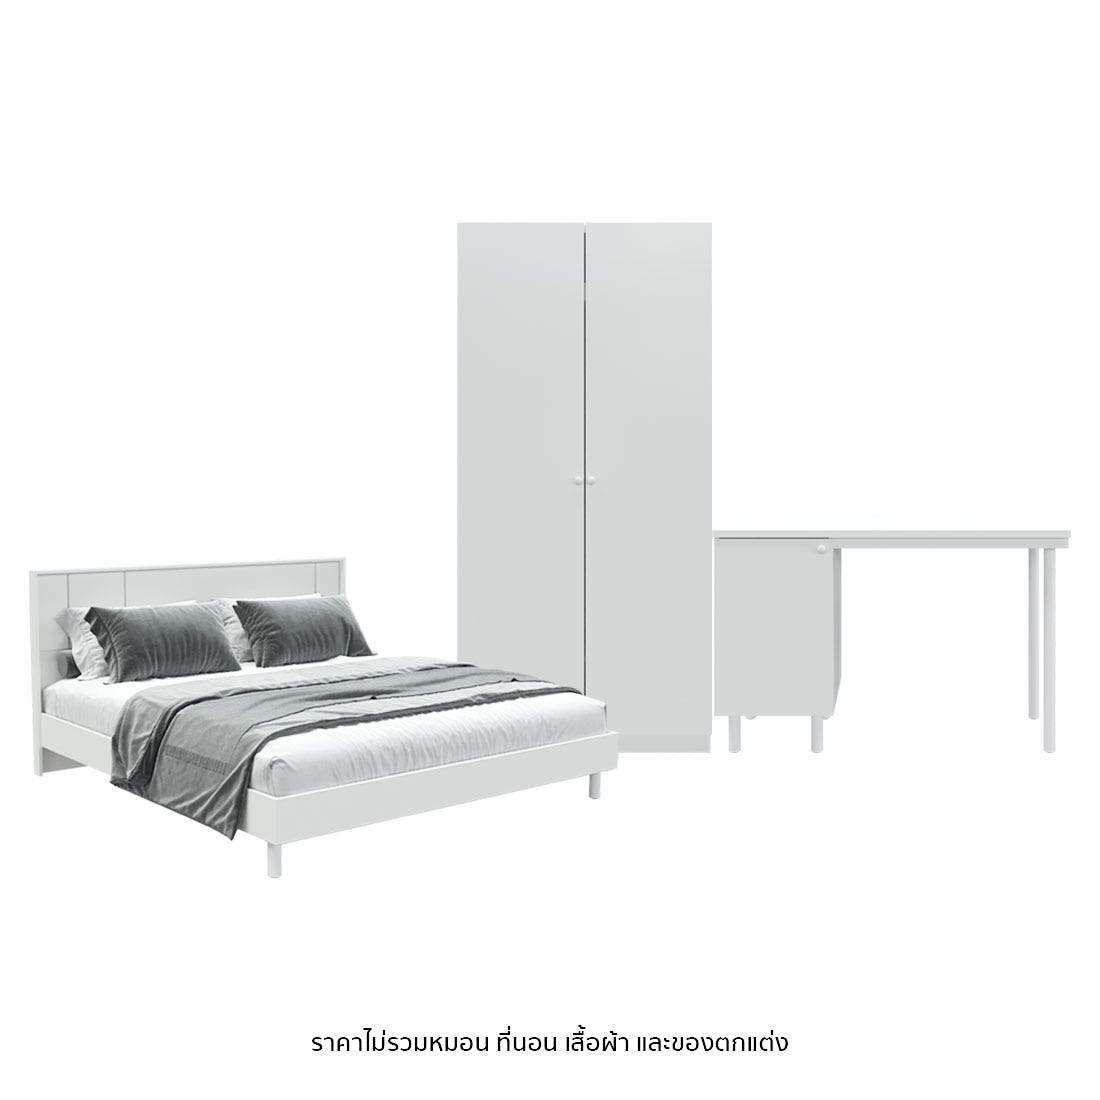 ชุดห้องนอน 5 ฟุต รุ่น Pearliz & ตู้ Blox 100 ซม. พร้อม โต๊ะทำงาน 120 ซม. สีขาว01